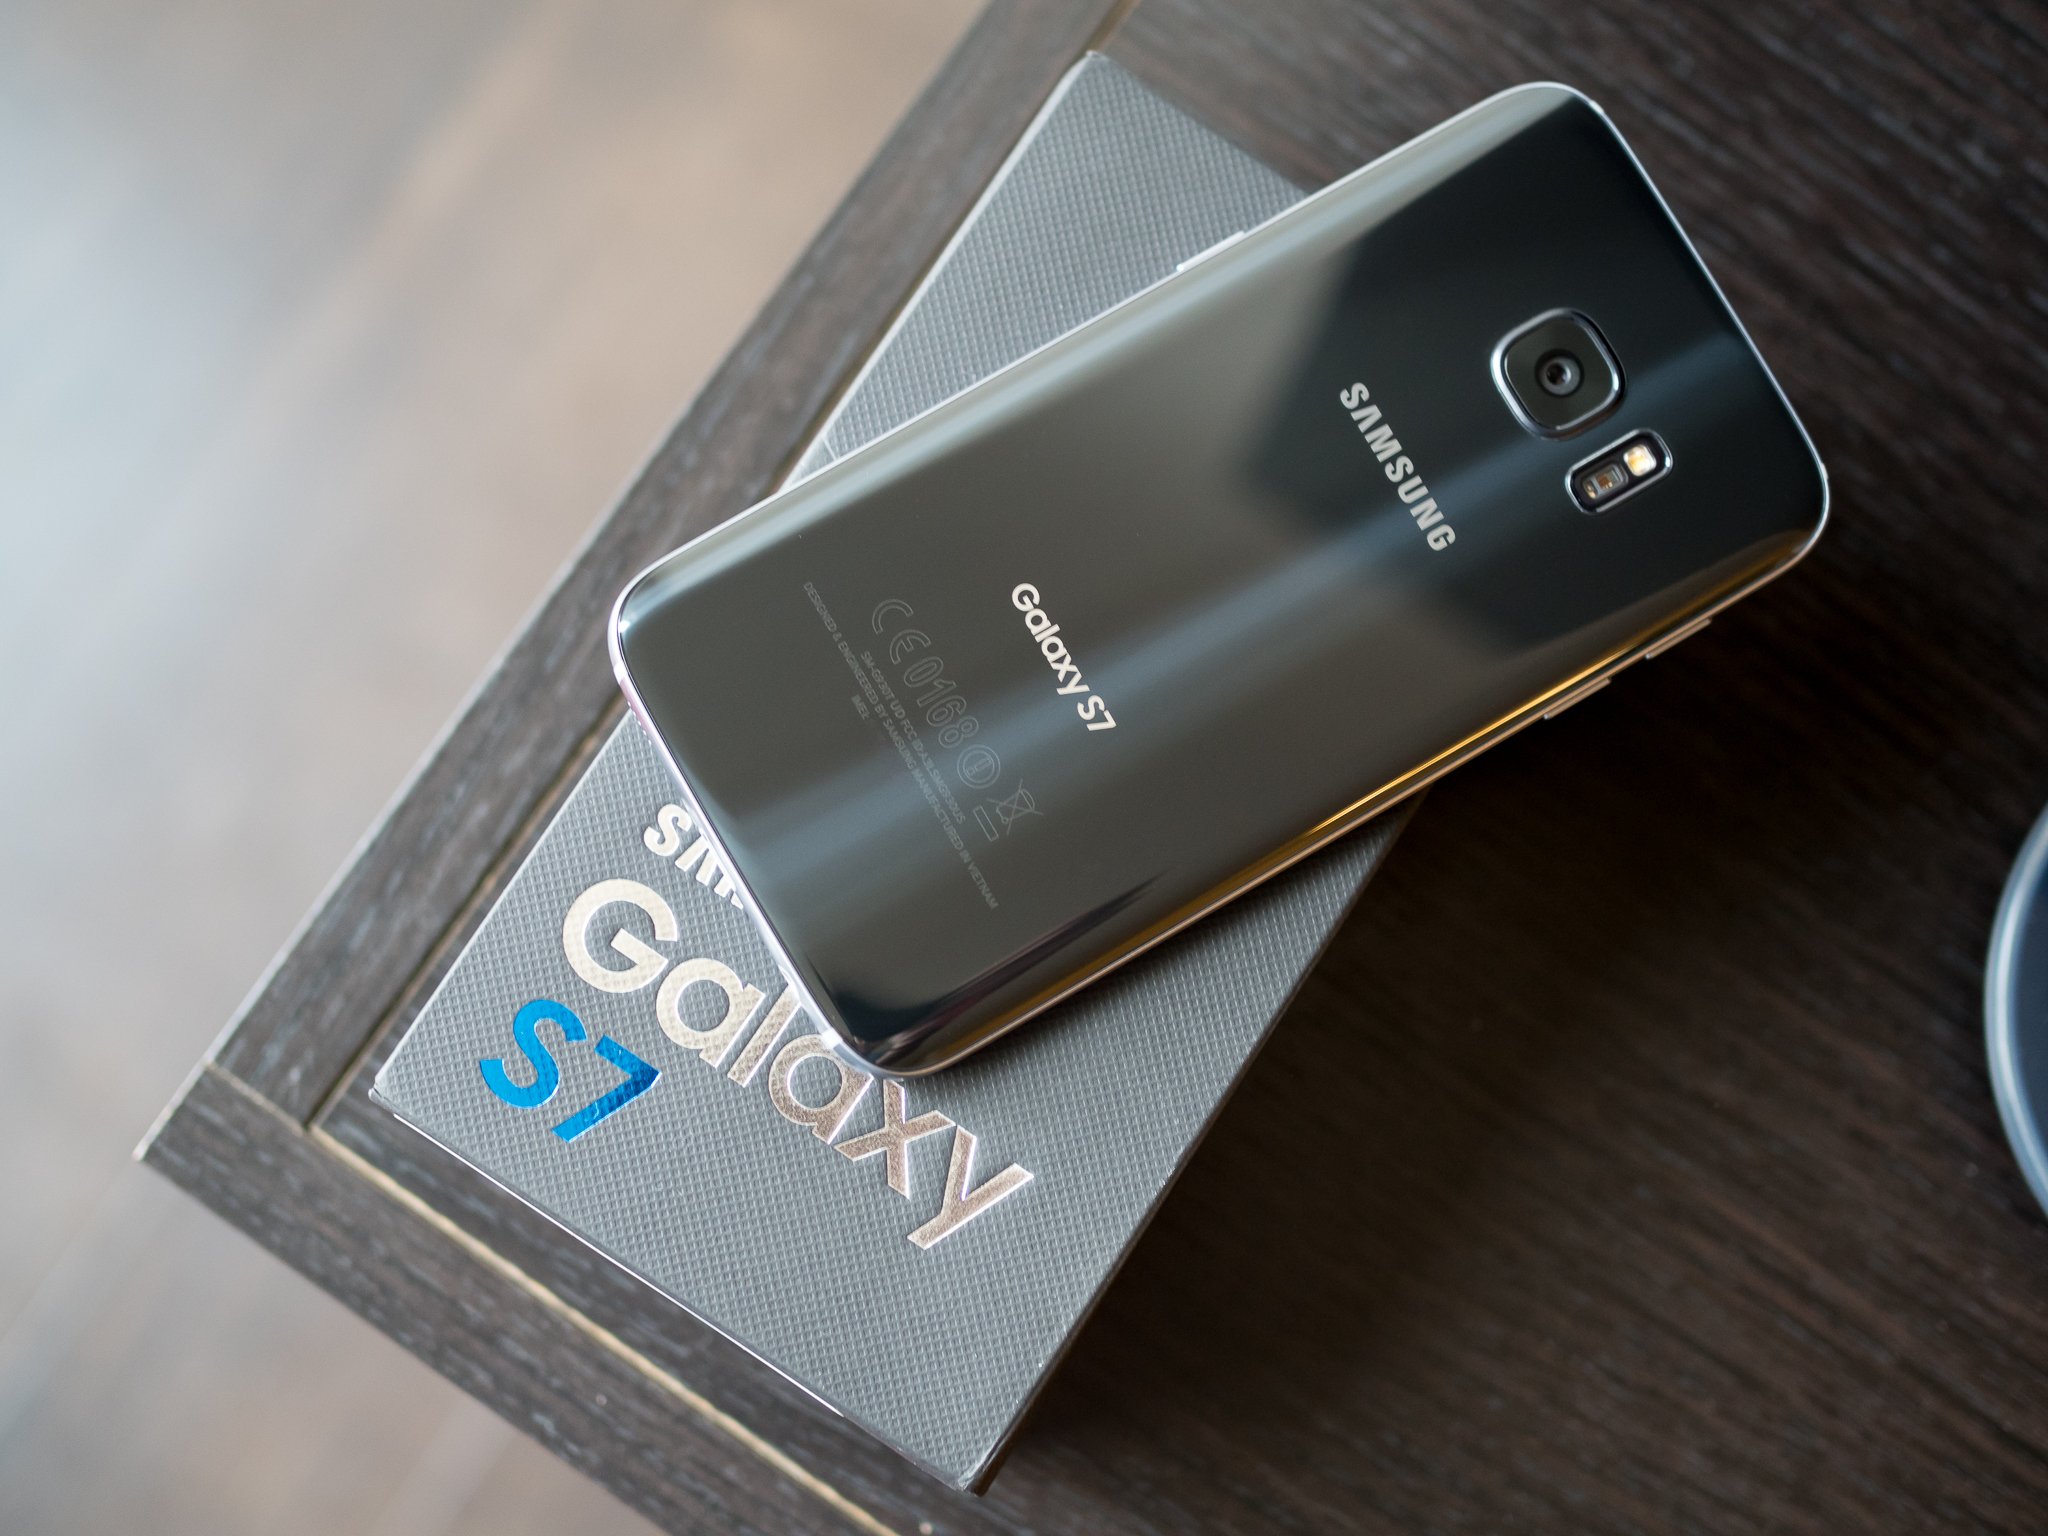 Black Verizon Samsung Galaxy S7 Edge